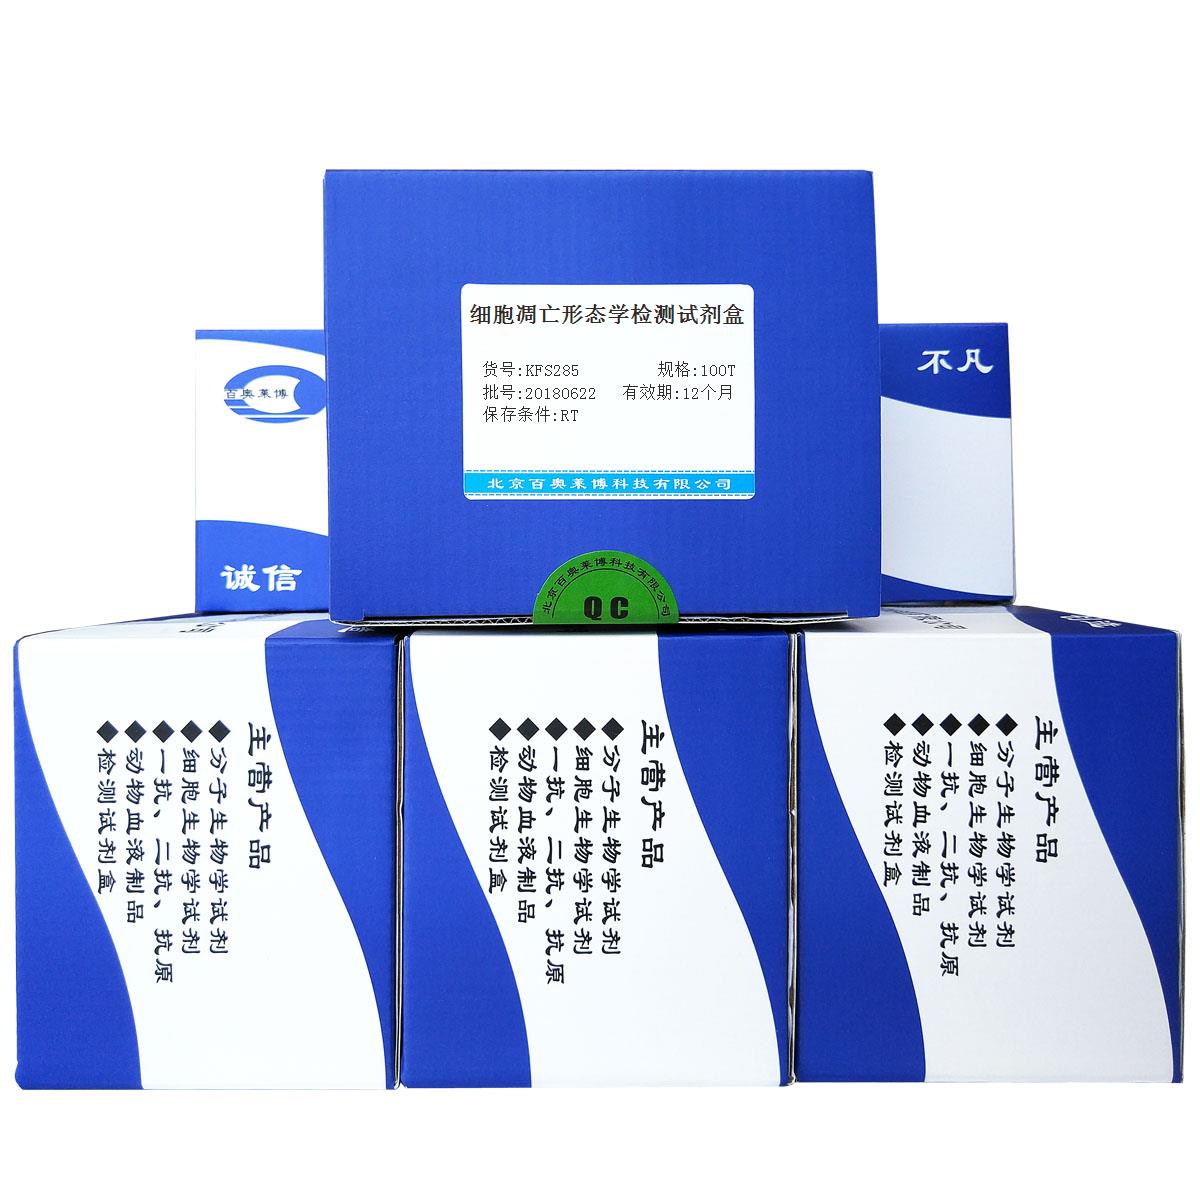 北京细胞凋亡形态学检测试剂盒价格